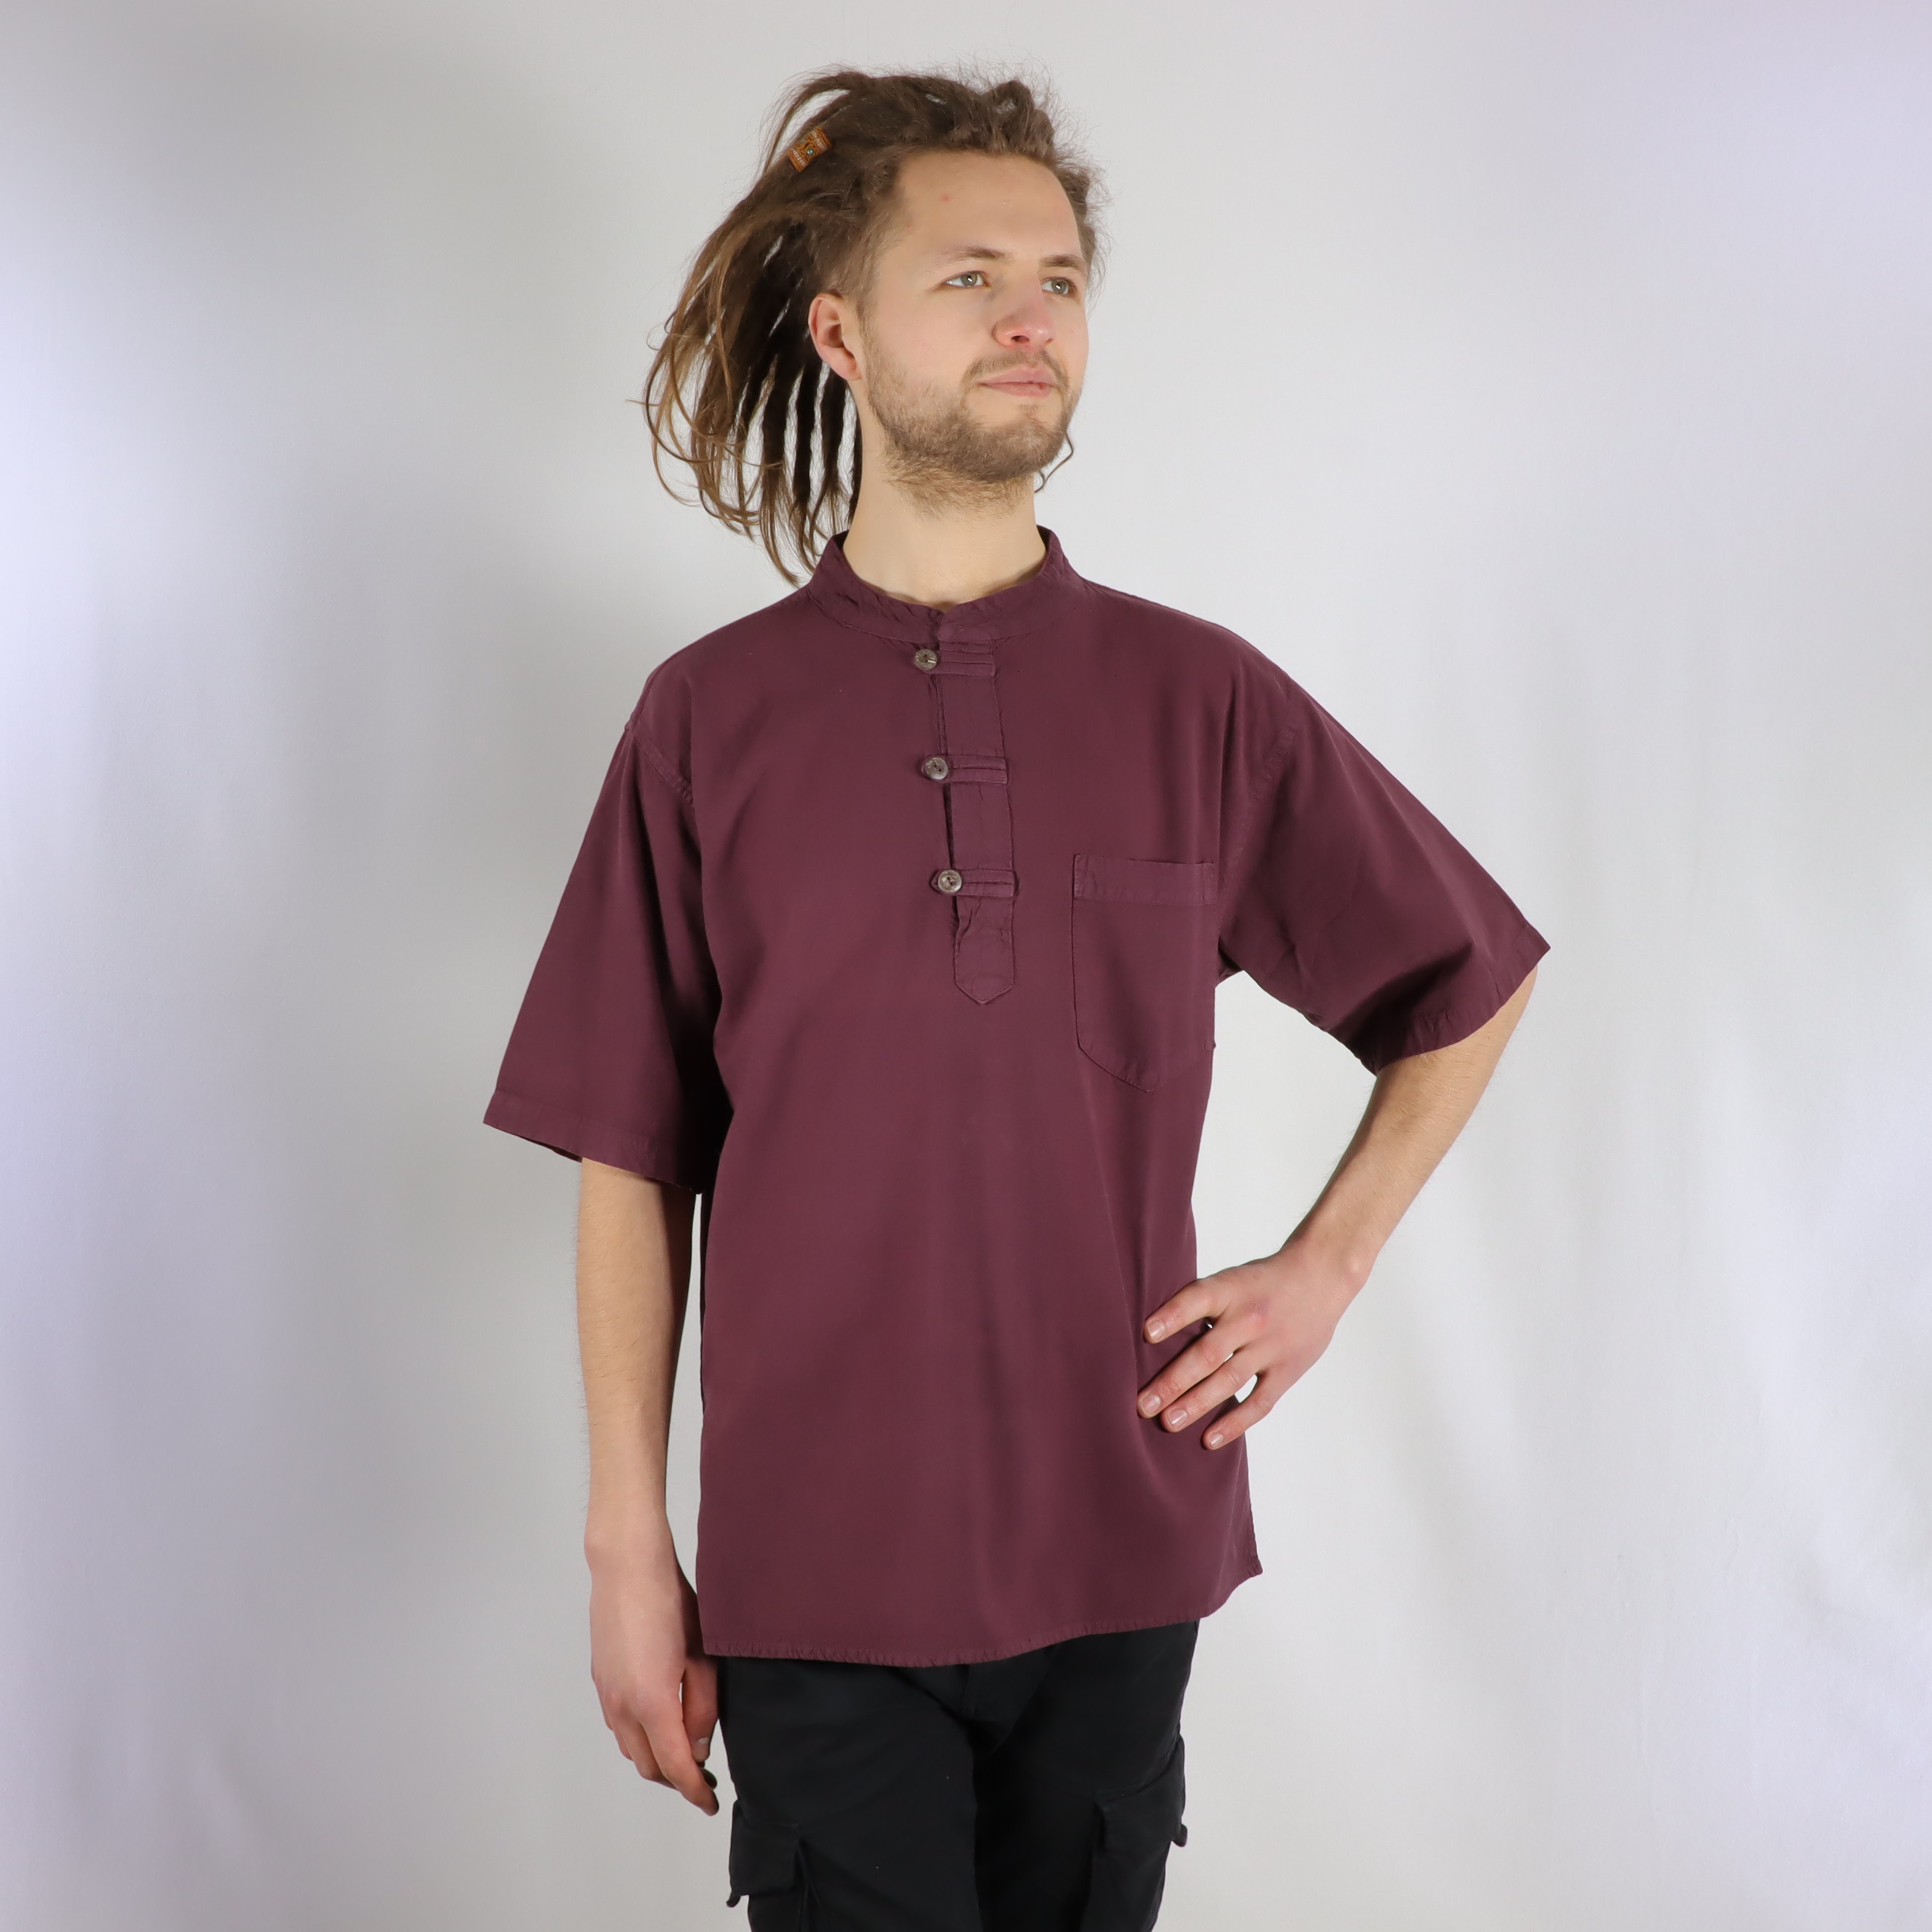 Hemd mit Knöpfen - UniColor - 100% Baumwolle - Kurzarm mit Stehkragen für coole Sommer Tage - chic, lässig und bequem für Freizeit und Alltag - Fair gehandelt aus Nepal